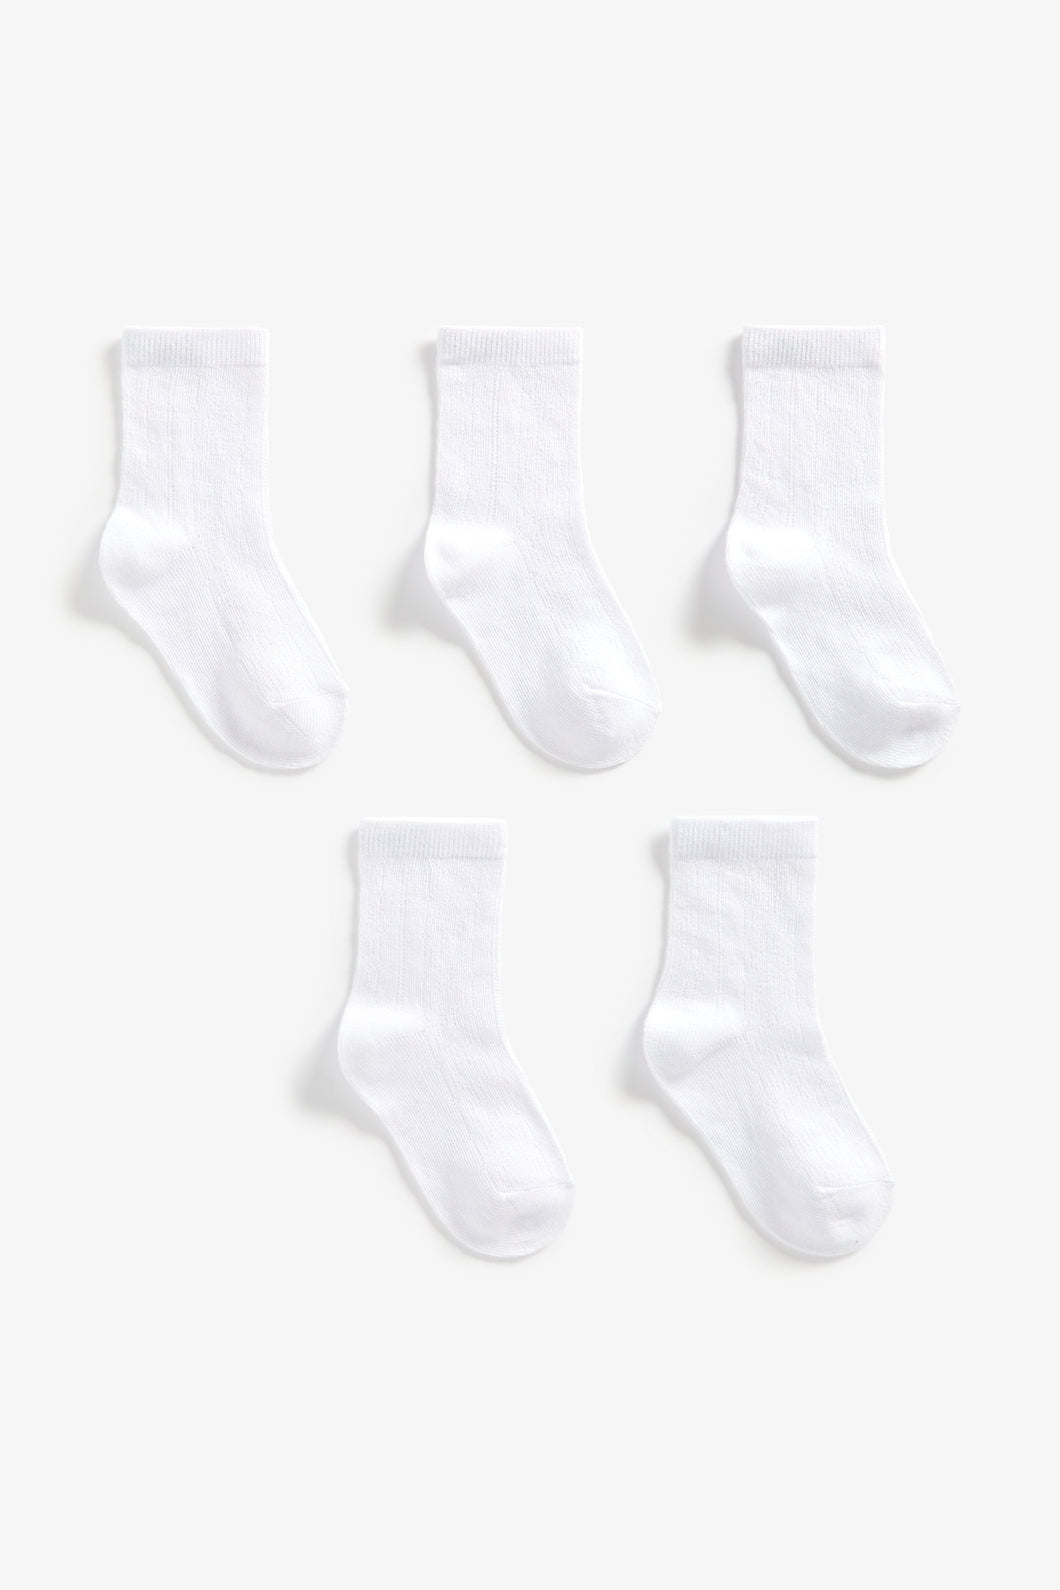 Mothercare White Pelerine Socks - 5 Pack